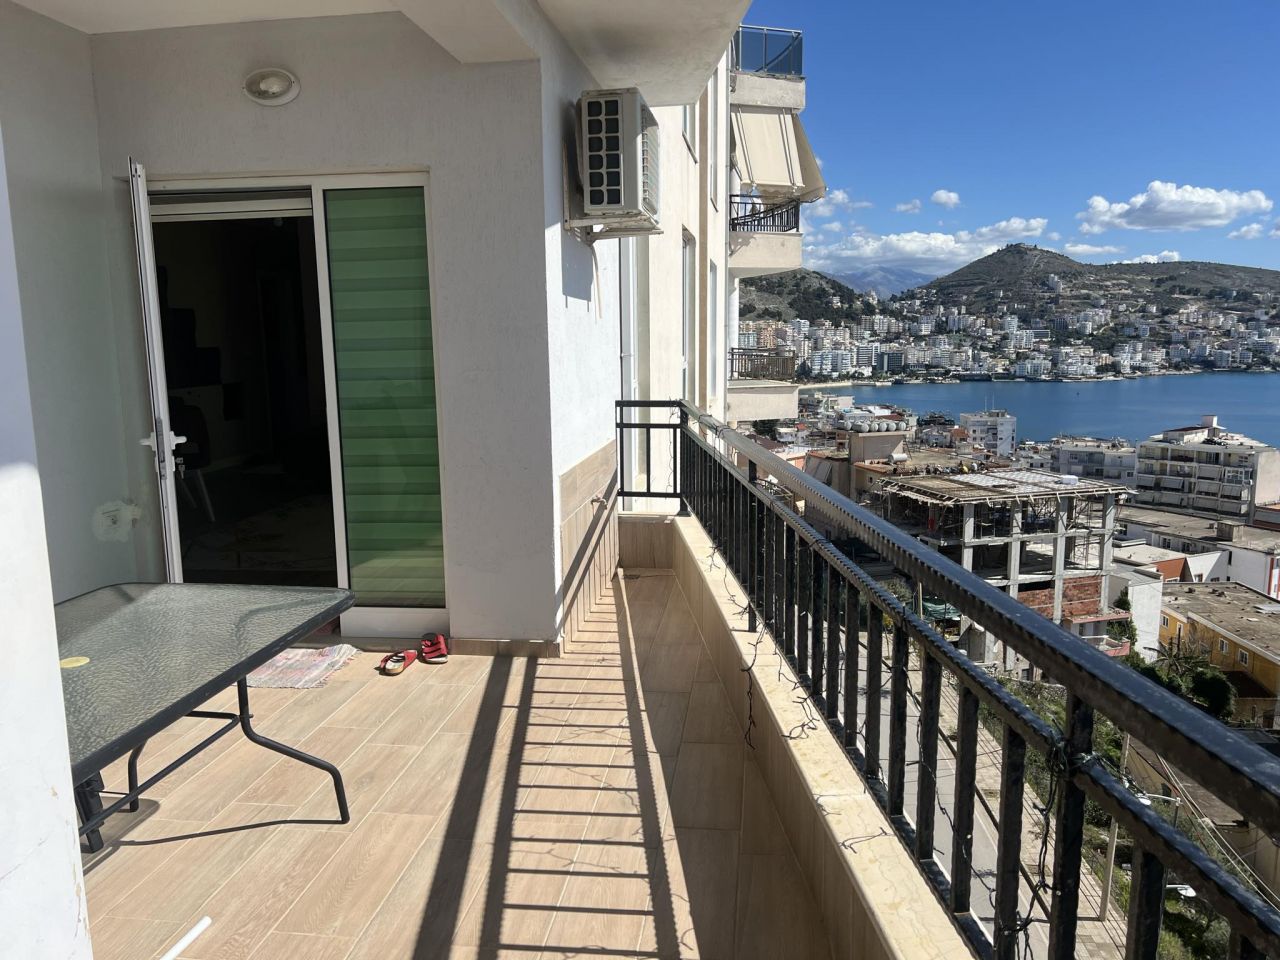 Mieszkanie Na Sprzedaż W Sarandzie W Albanii, W Pełni Umeblowane, Ze Wspaniałym Widokiem Na Morze